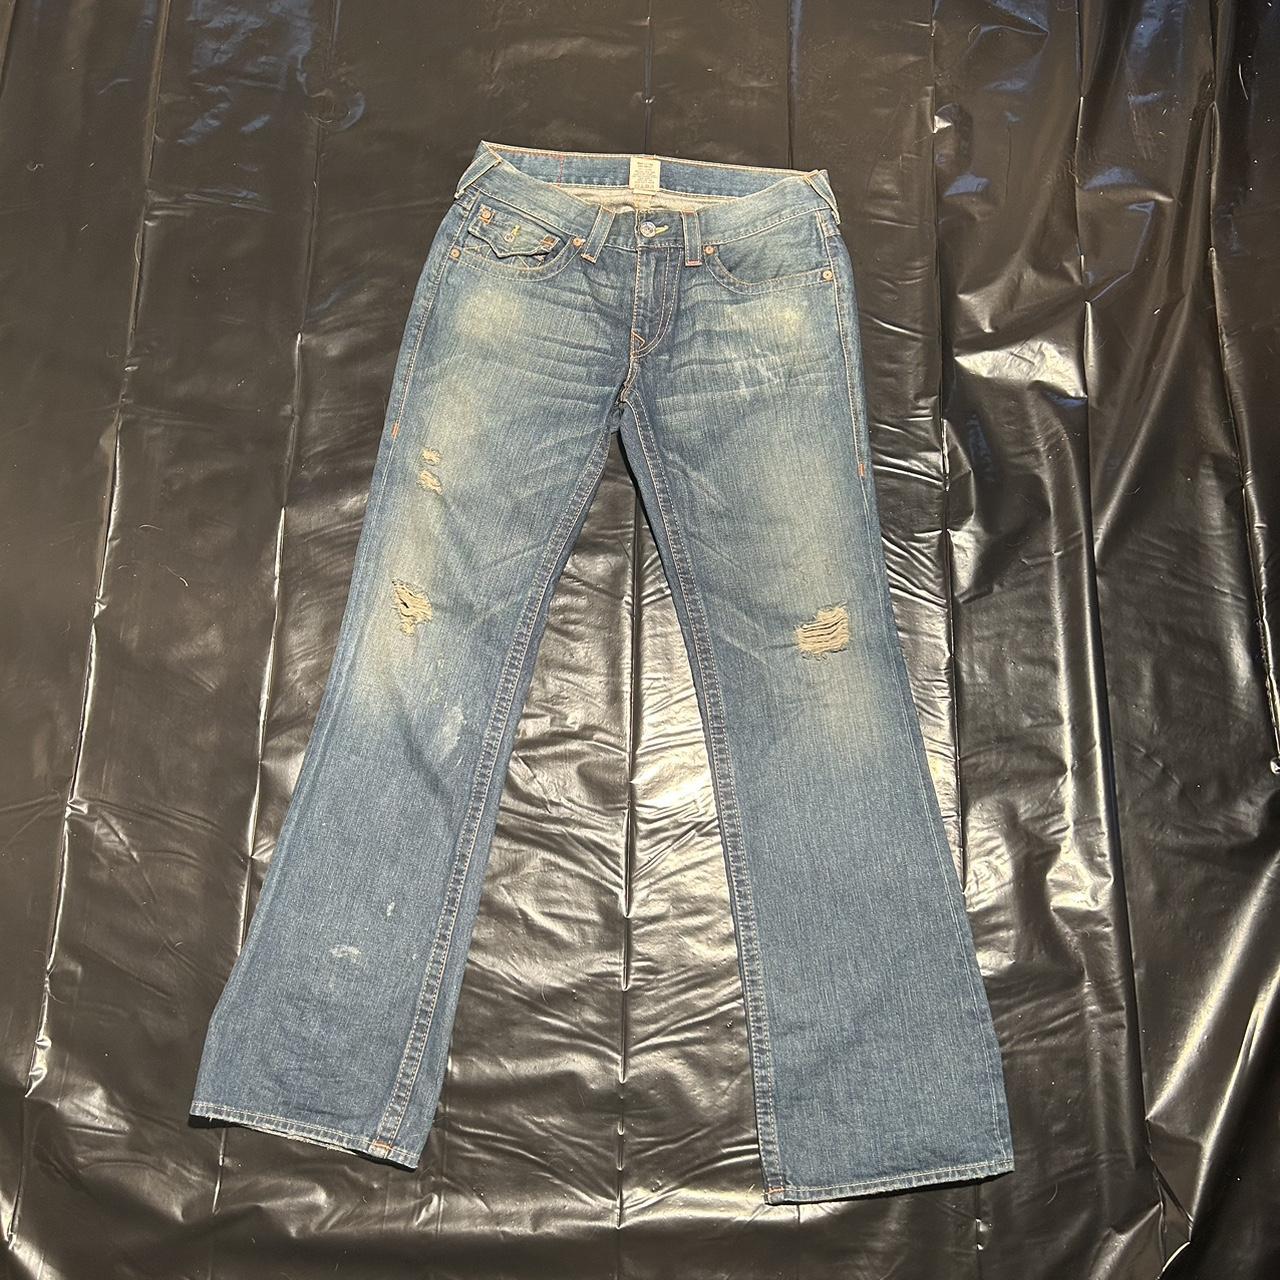 True religion jeans Excellent condition Never... - Depop